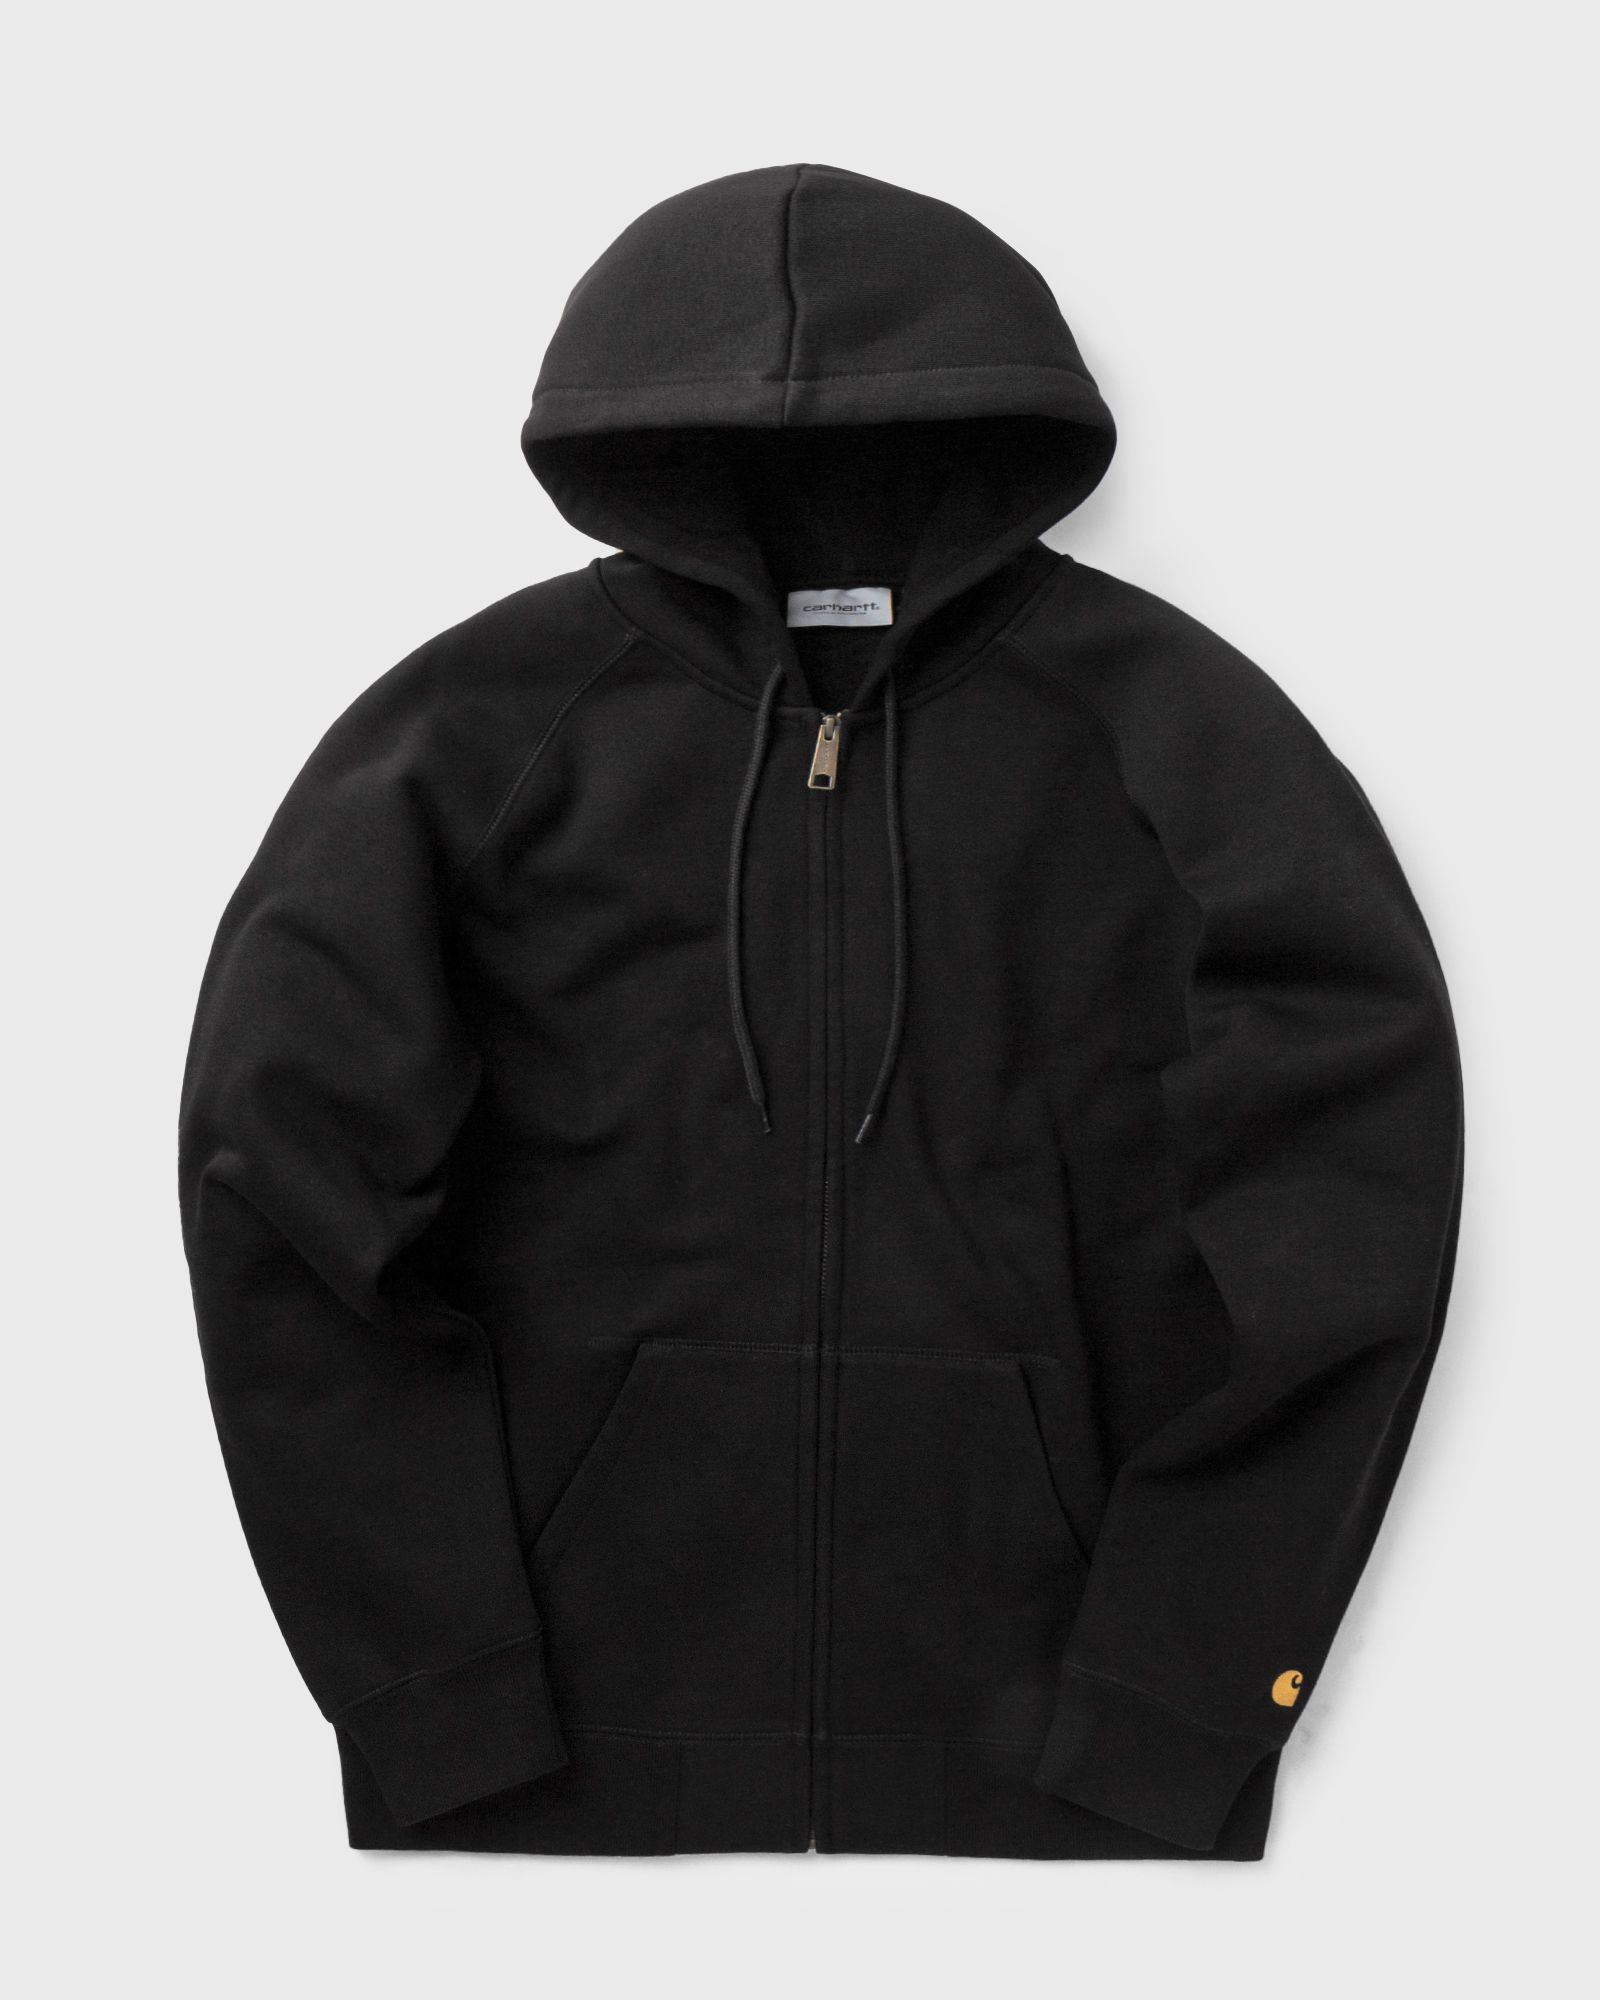 Carhartt WIP - hooded chase jacket men hoodies|zippers black in größe:l